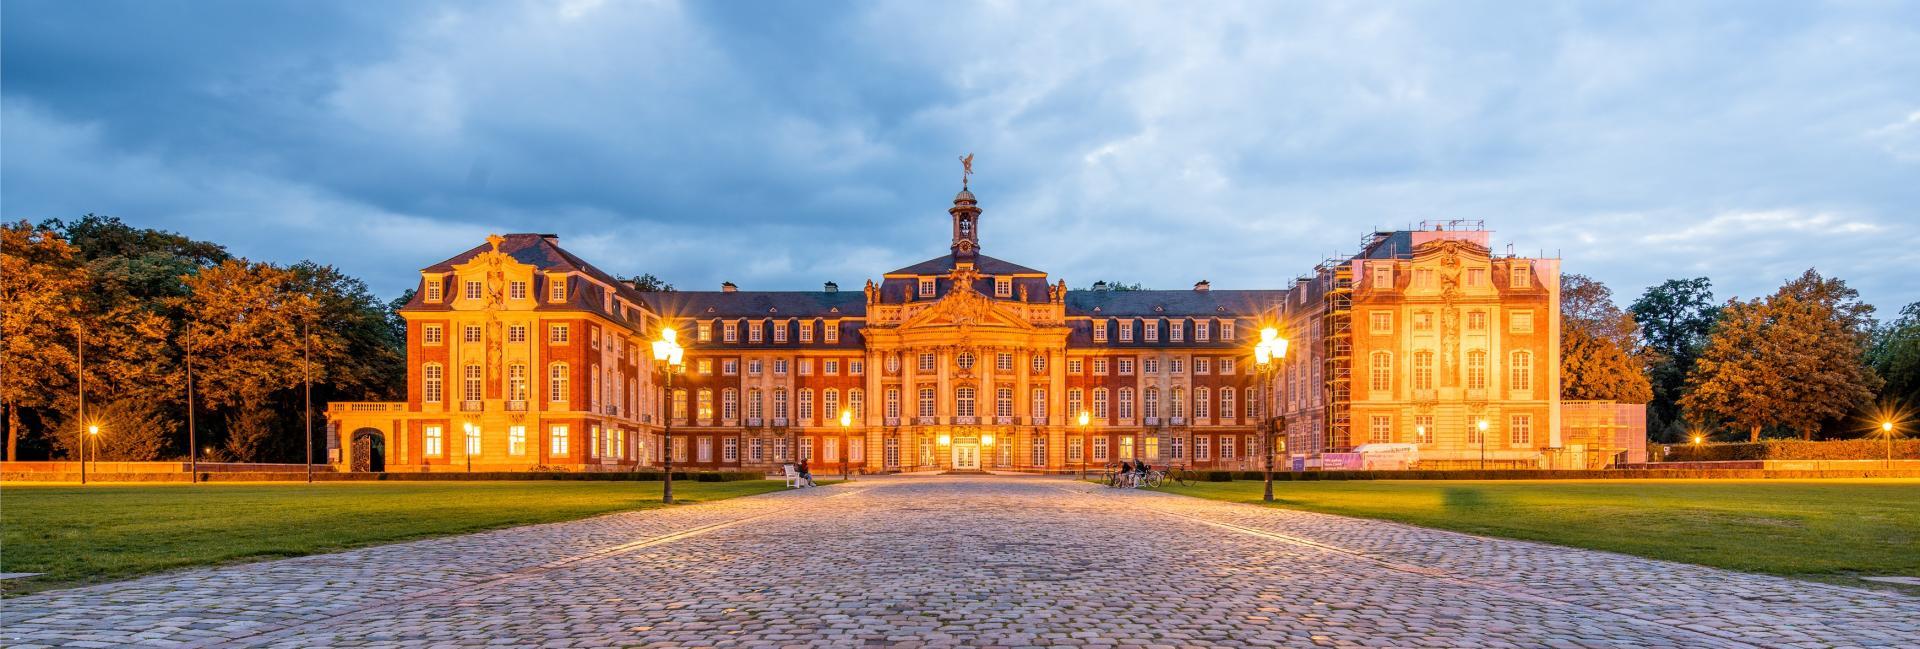 Schloss Münster - Beleuchtete Aussensansicht 